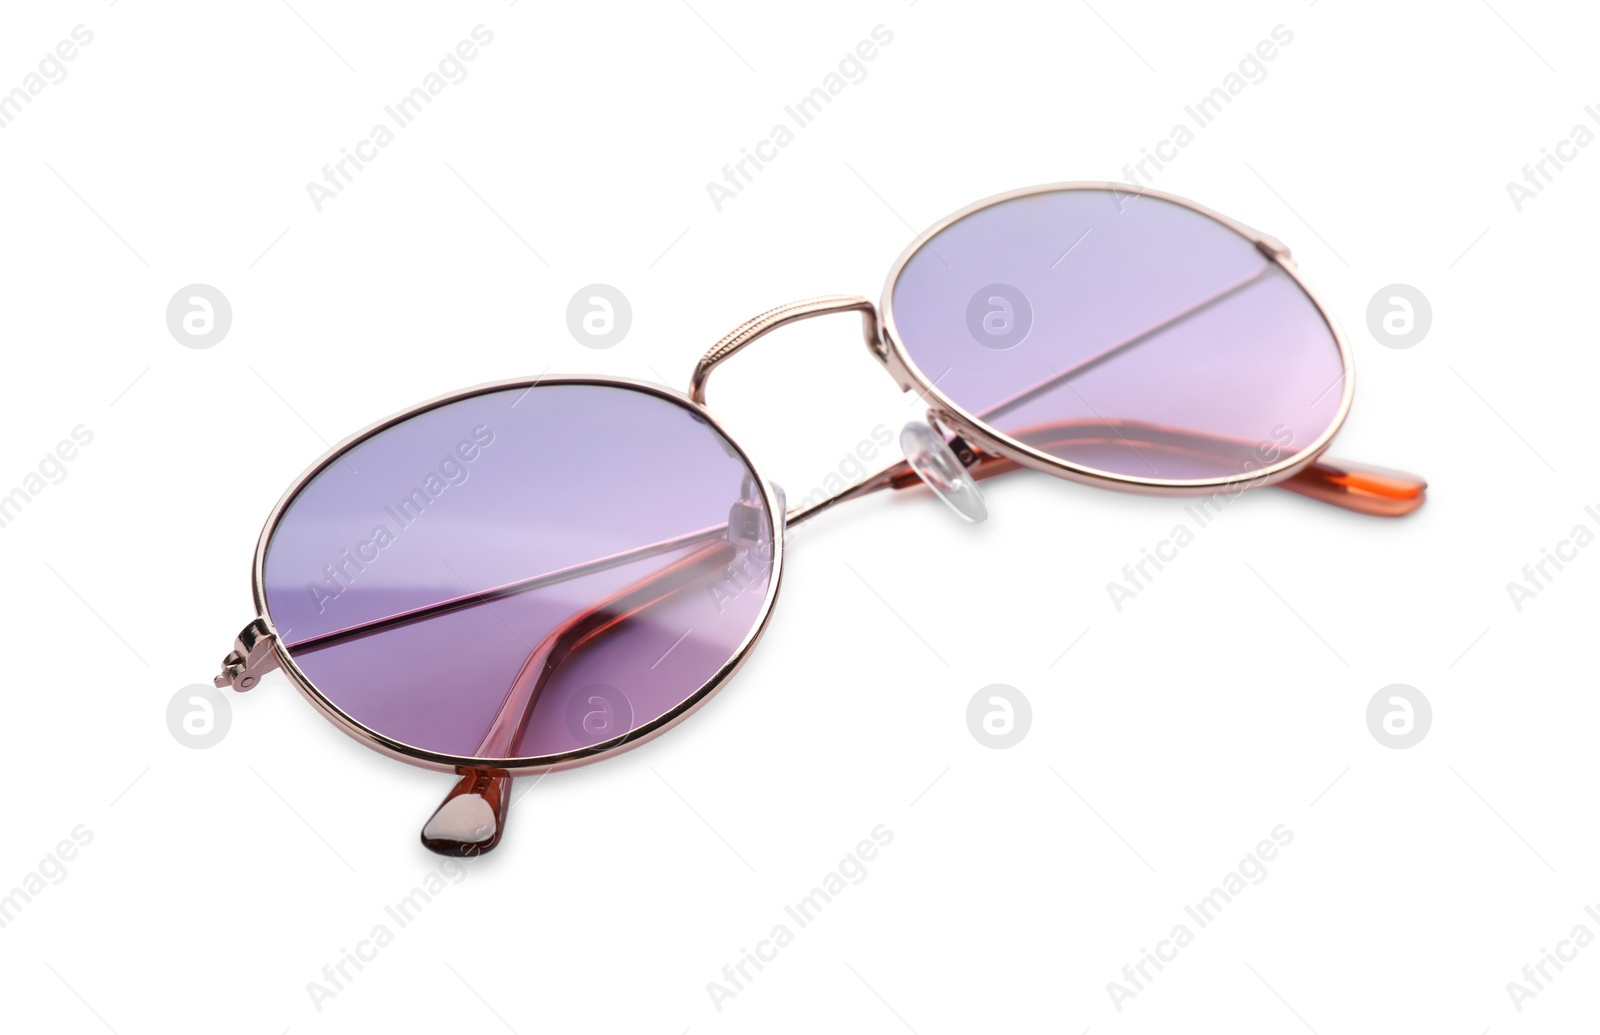 Photo of Beautiful stylish protective sunglasses isolated on white